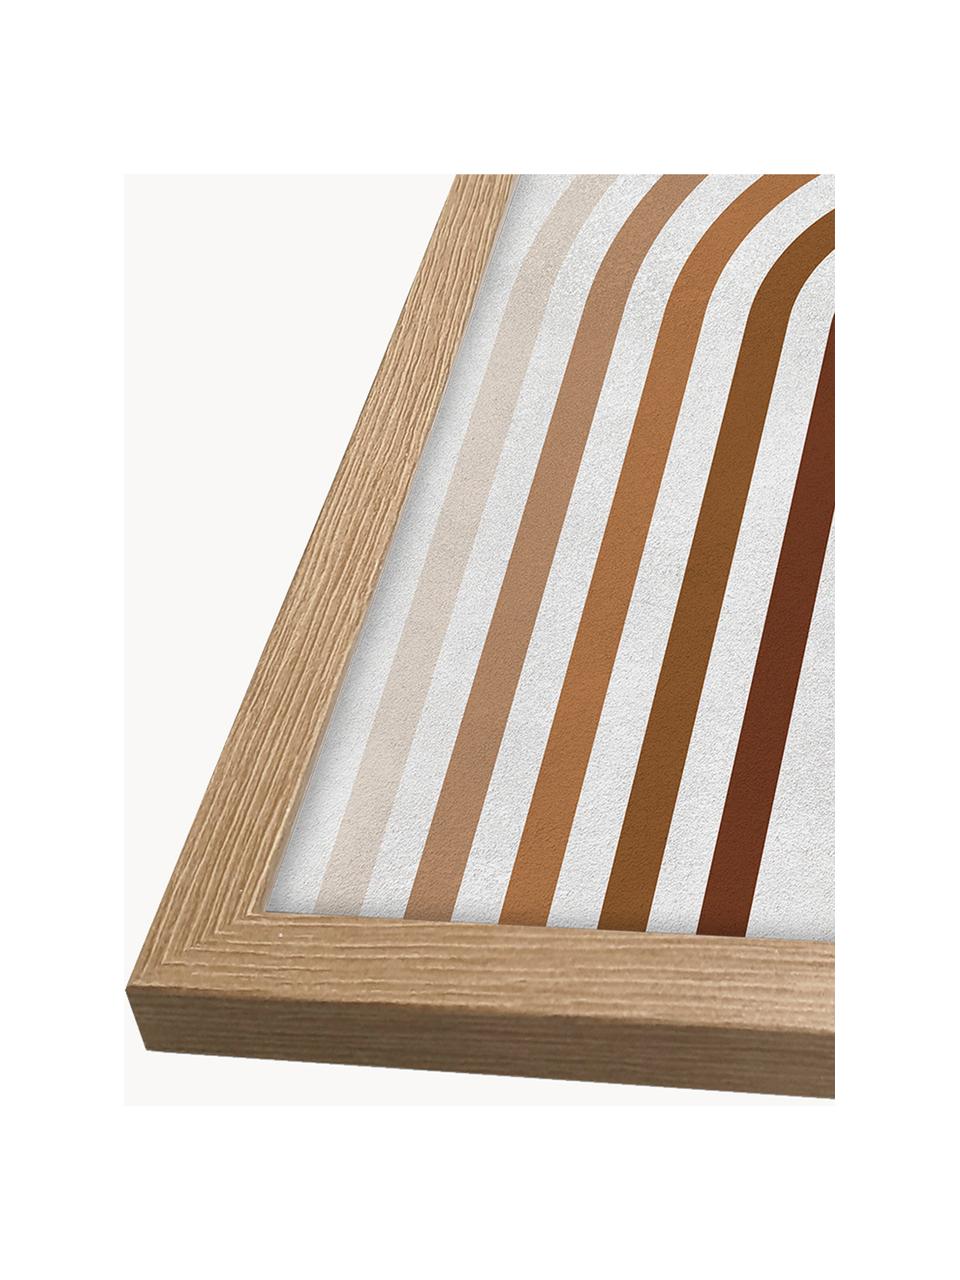 Gerahmter Digitaldruck Upside Curves, Bild: Digitaldruck auf Papier, Rahmen: Holz, Mitteldichte Holzfa, Front: Glas, Beige- und Brauntöne, B 32 x H 42 cm